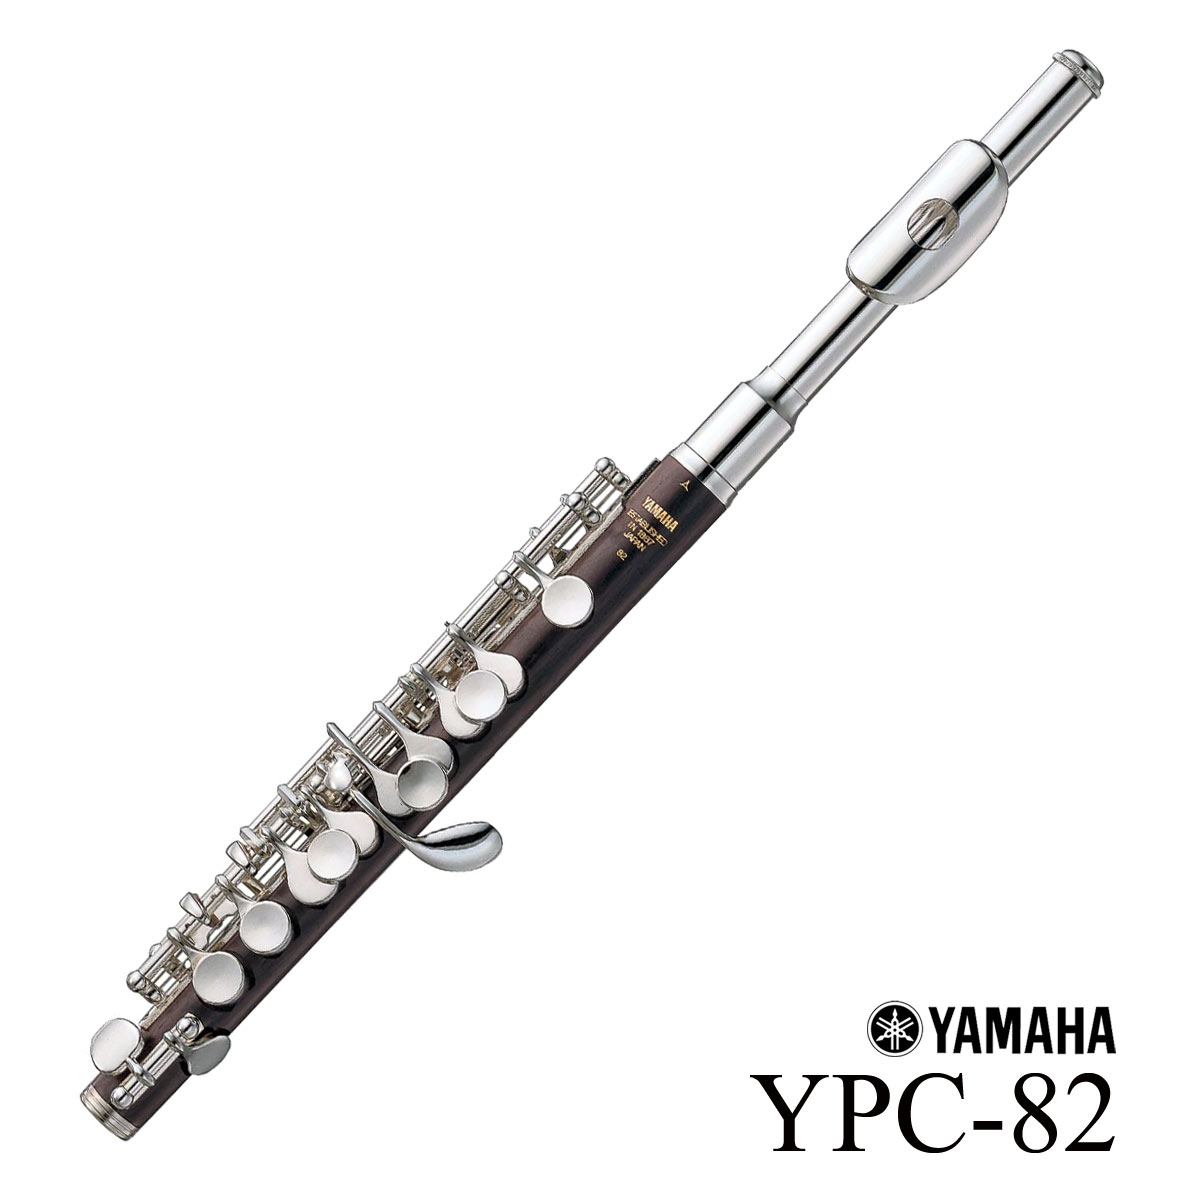 YAMAHA YPC-82 ピッコロ ヤマハ 頭部管銀製 グラナディラ材 HANDCRAFT 年末のプロモーション